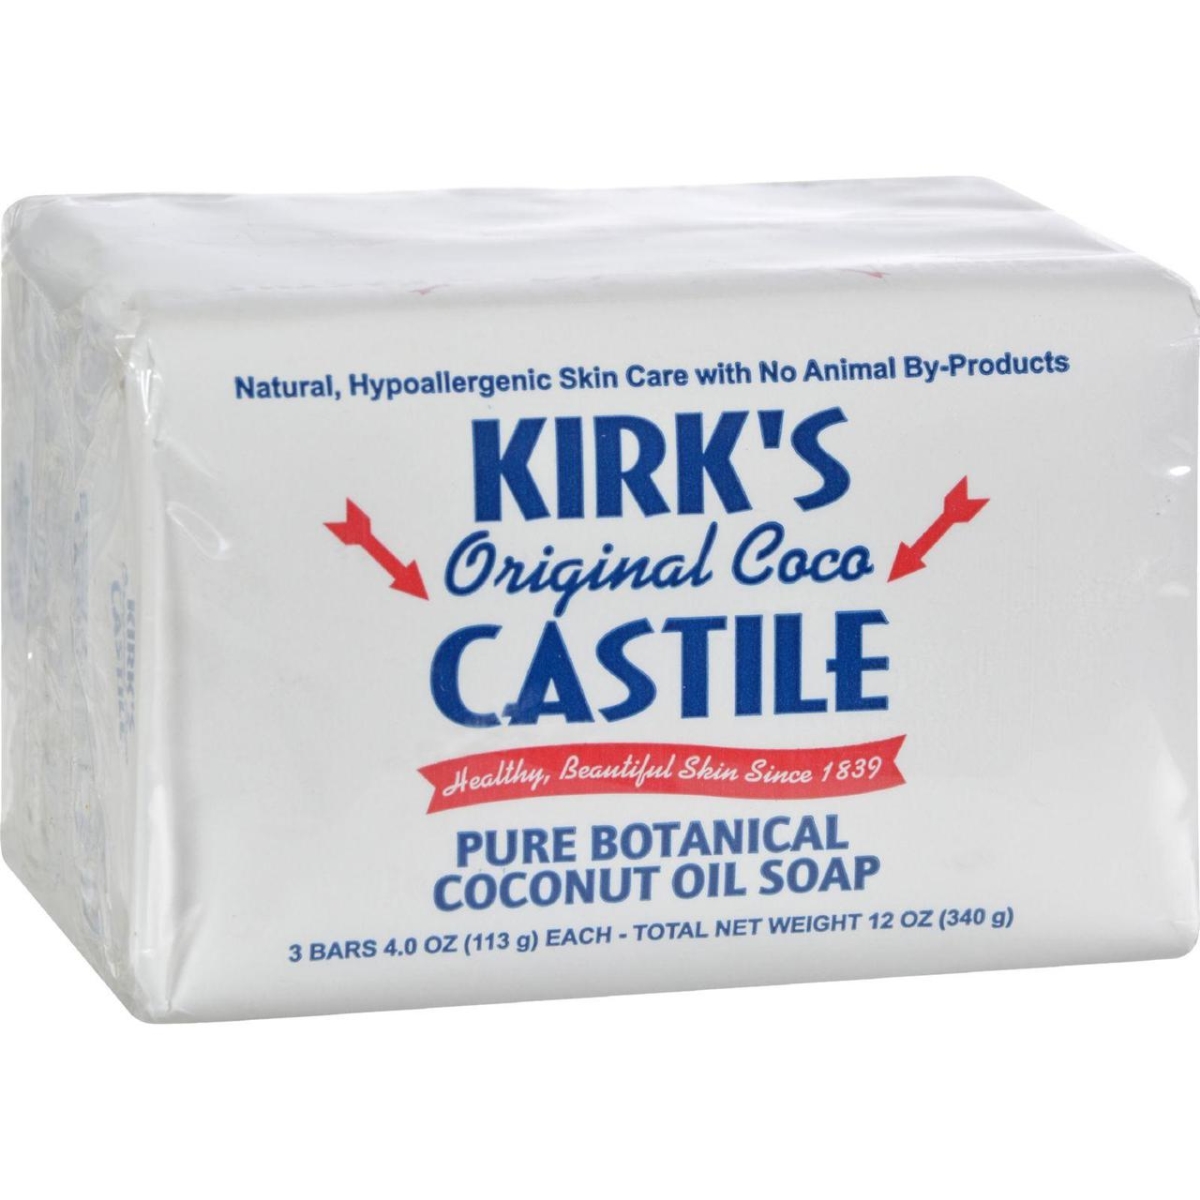 Hg0419358 4 Oz Castile Soap Original - Pack Of 3